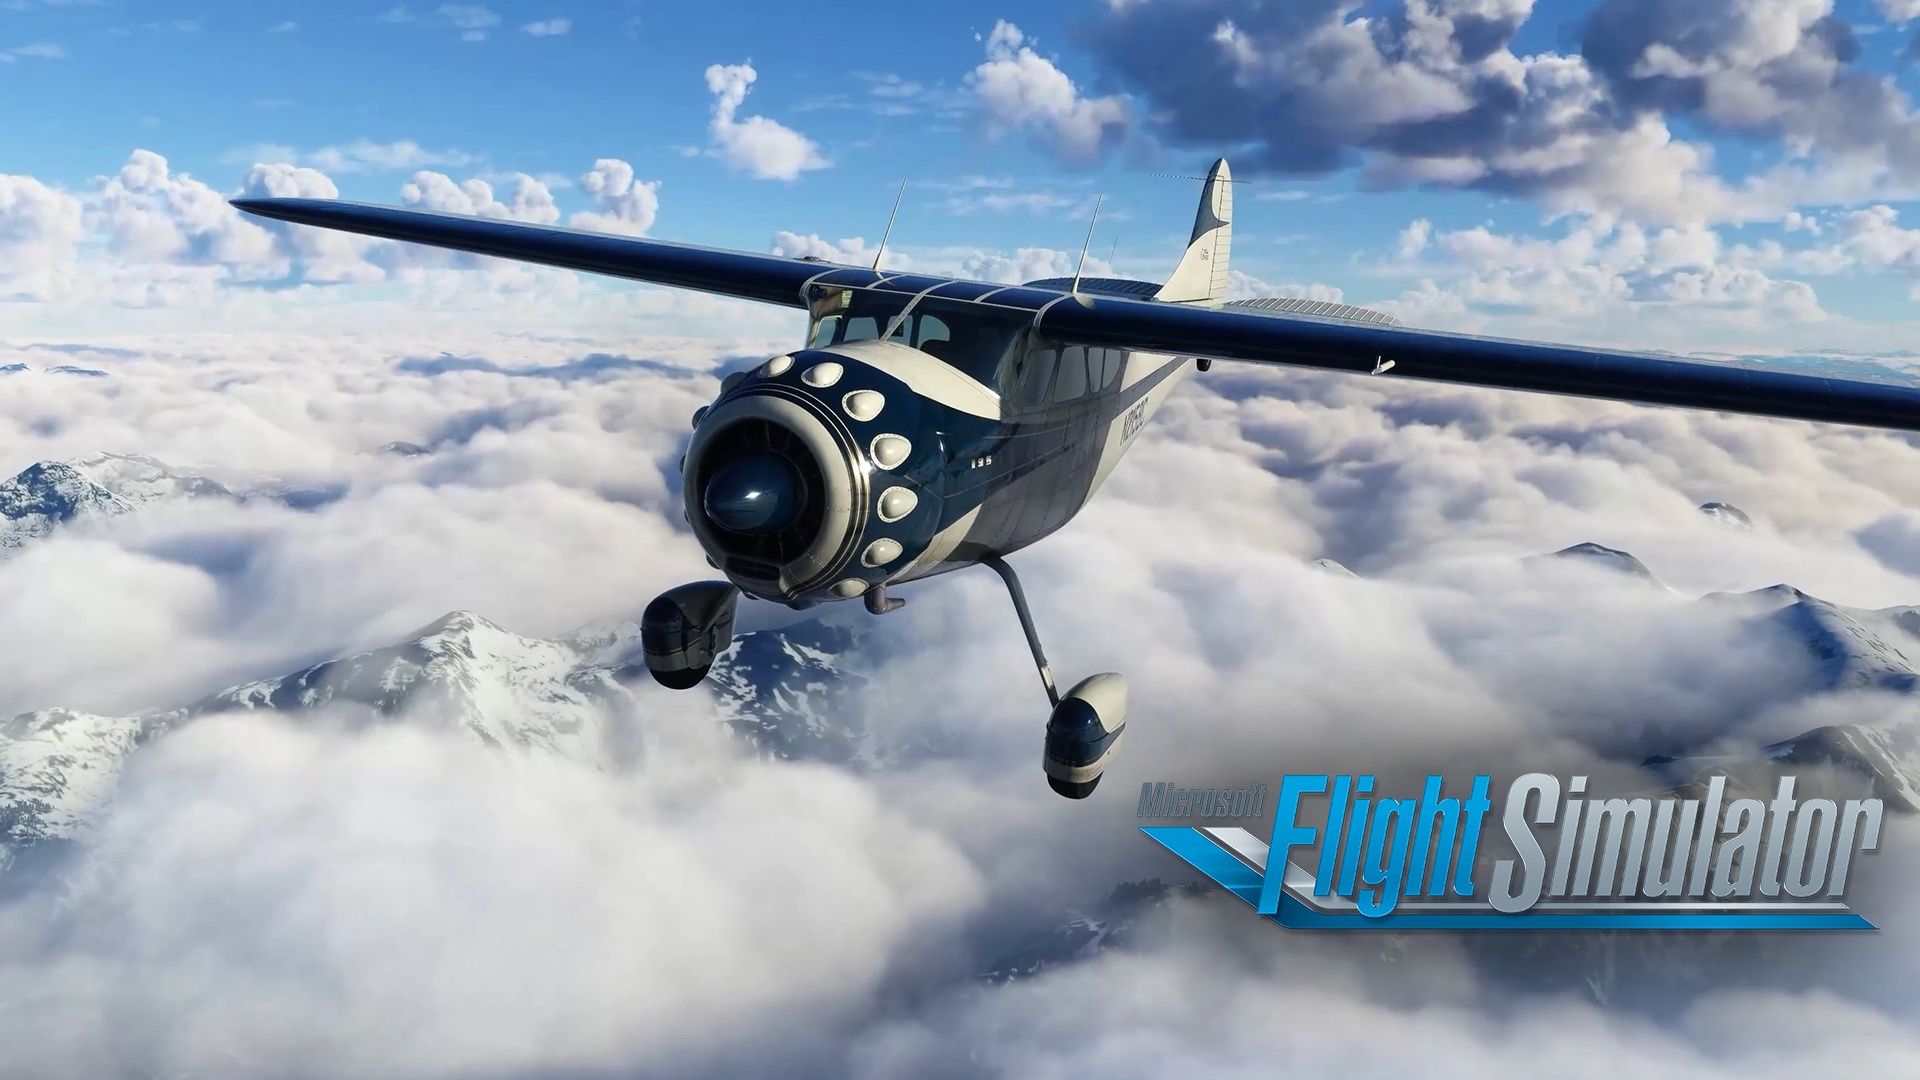 Flight Simulator e Ace Attorney são destaques nos lançamentos da semana